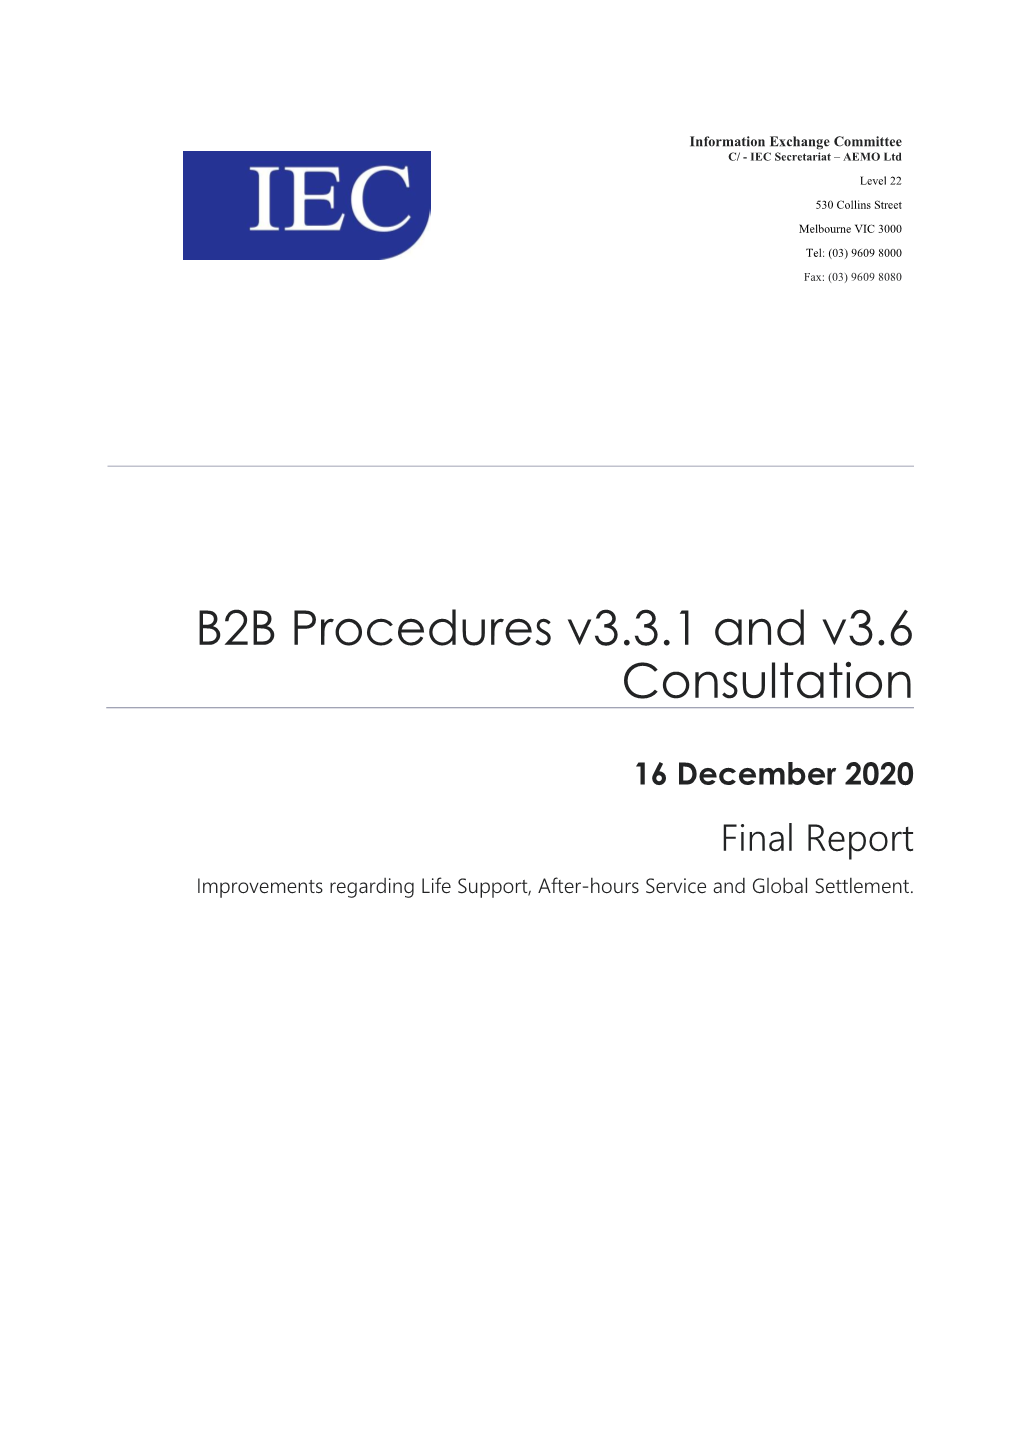 B2B Procedures V3.3.1 and V3.6 Consultation